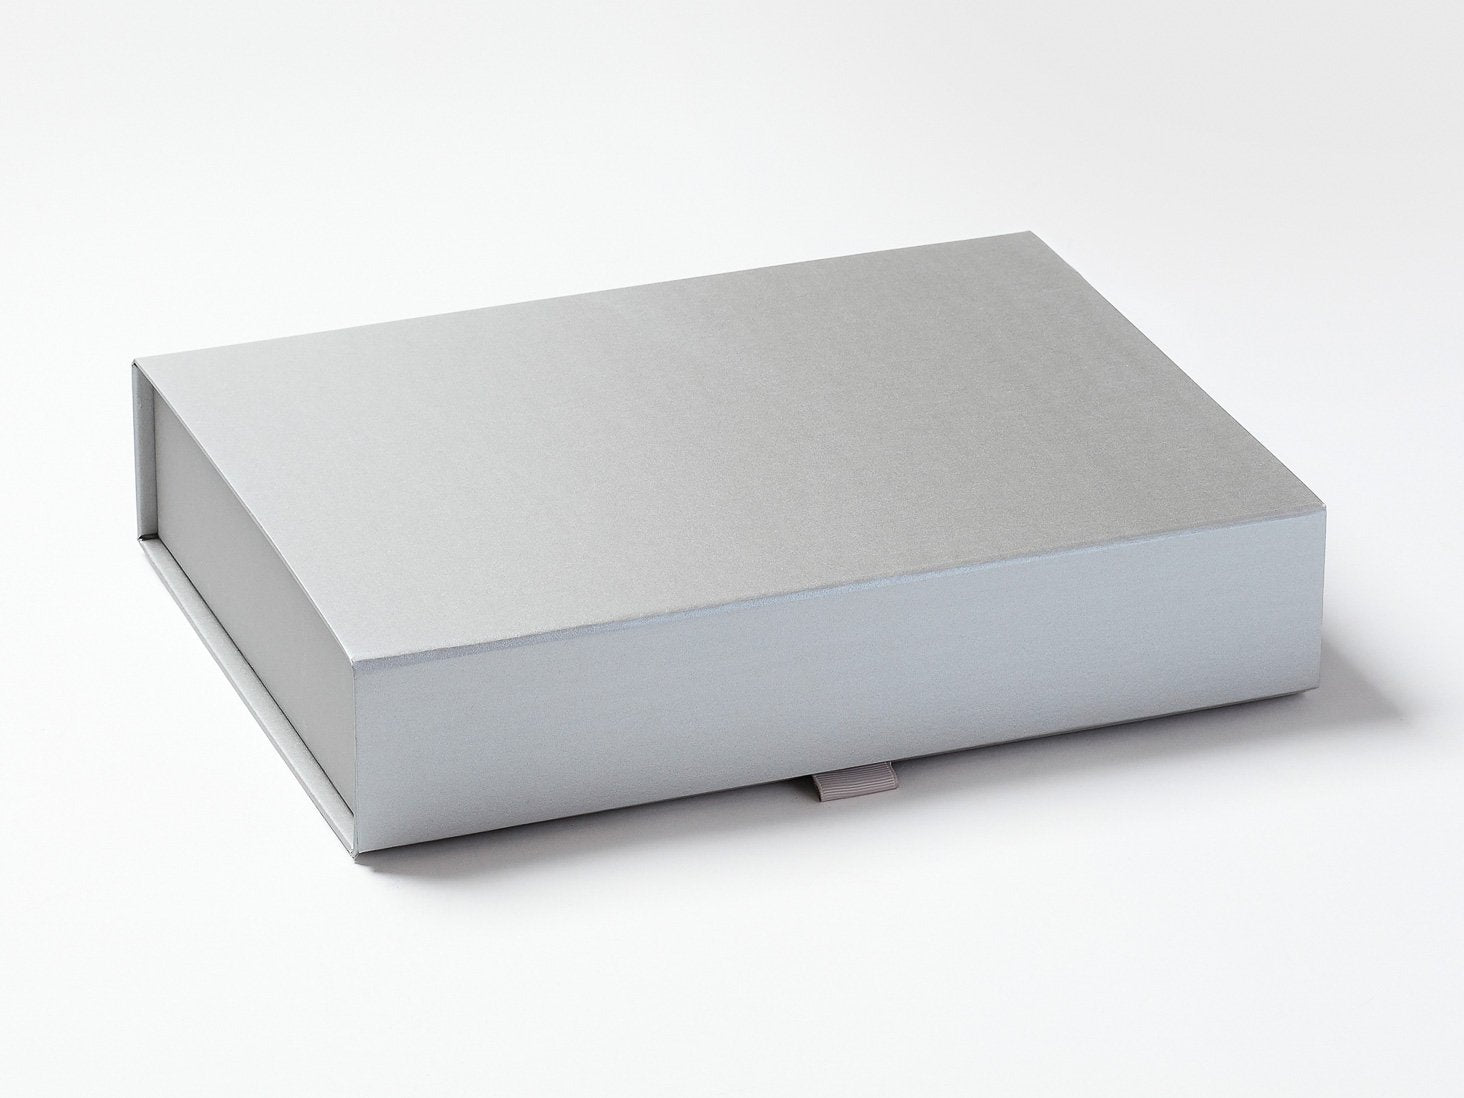 Silver A4 Shallow Gift Box Sample with Silver Gray Ribbon Tab Loop